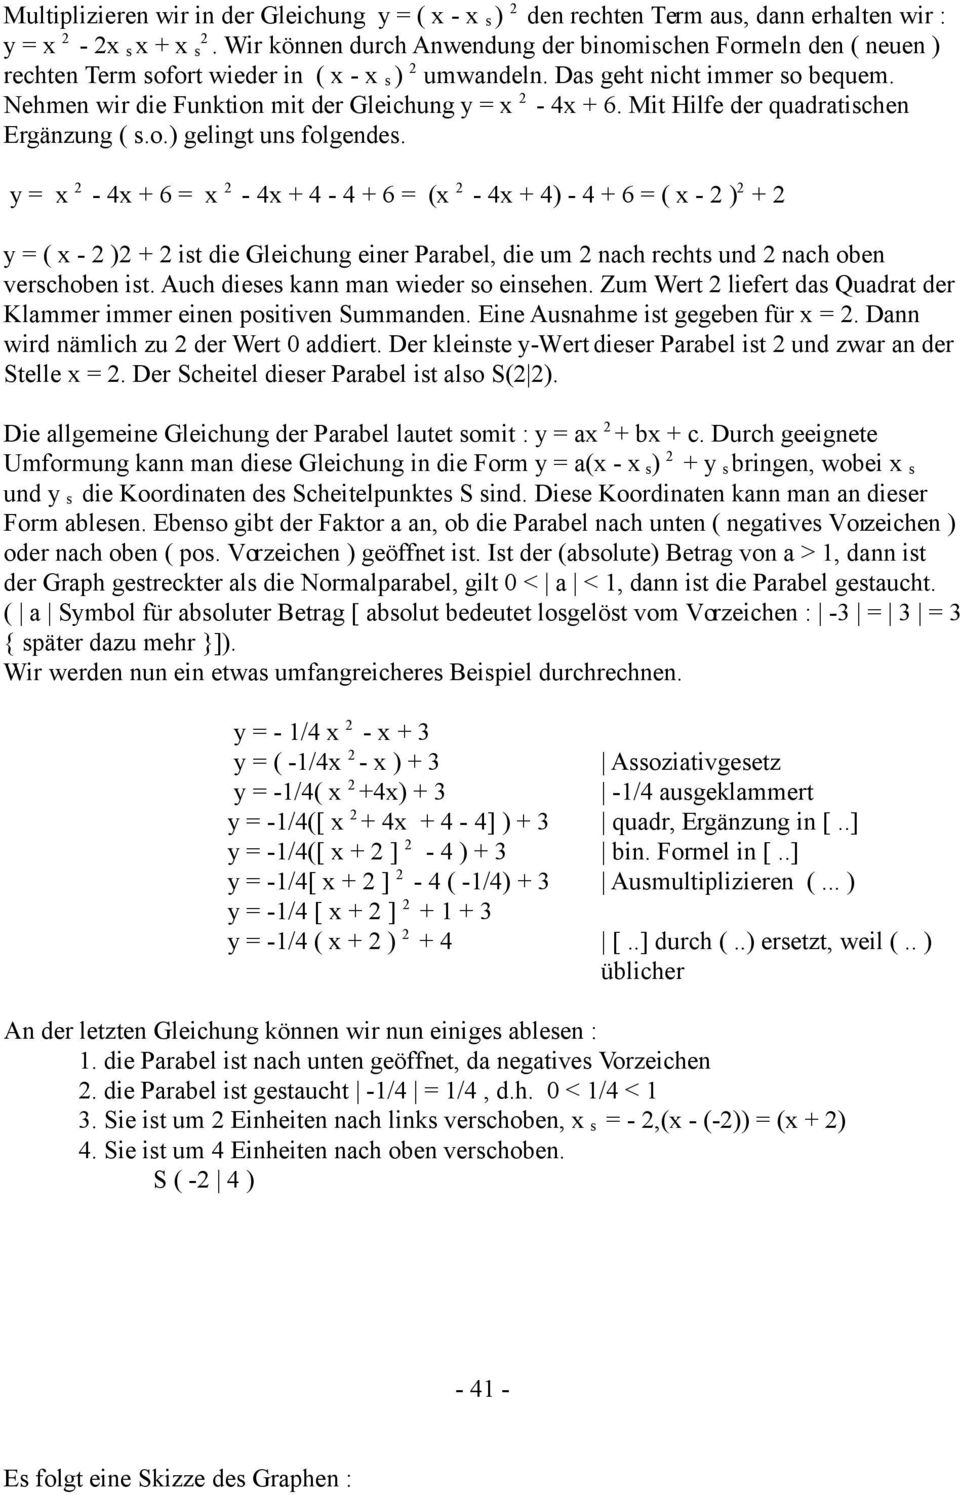 Nehmen wir die Funktion mit der Gleichung y = x 2-4x + 6. Mit Hilfe der quadratischen Ergänzung ( s.o.) gelingt uns folgendes.